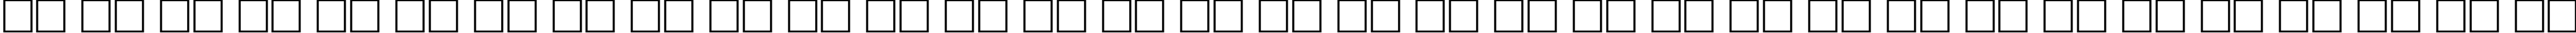 Пример написания русского алфавита шрифтом Mercedes Regular